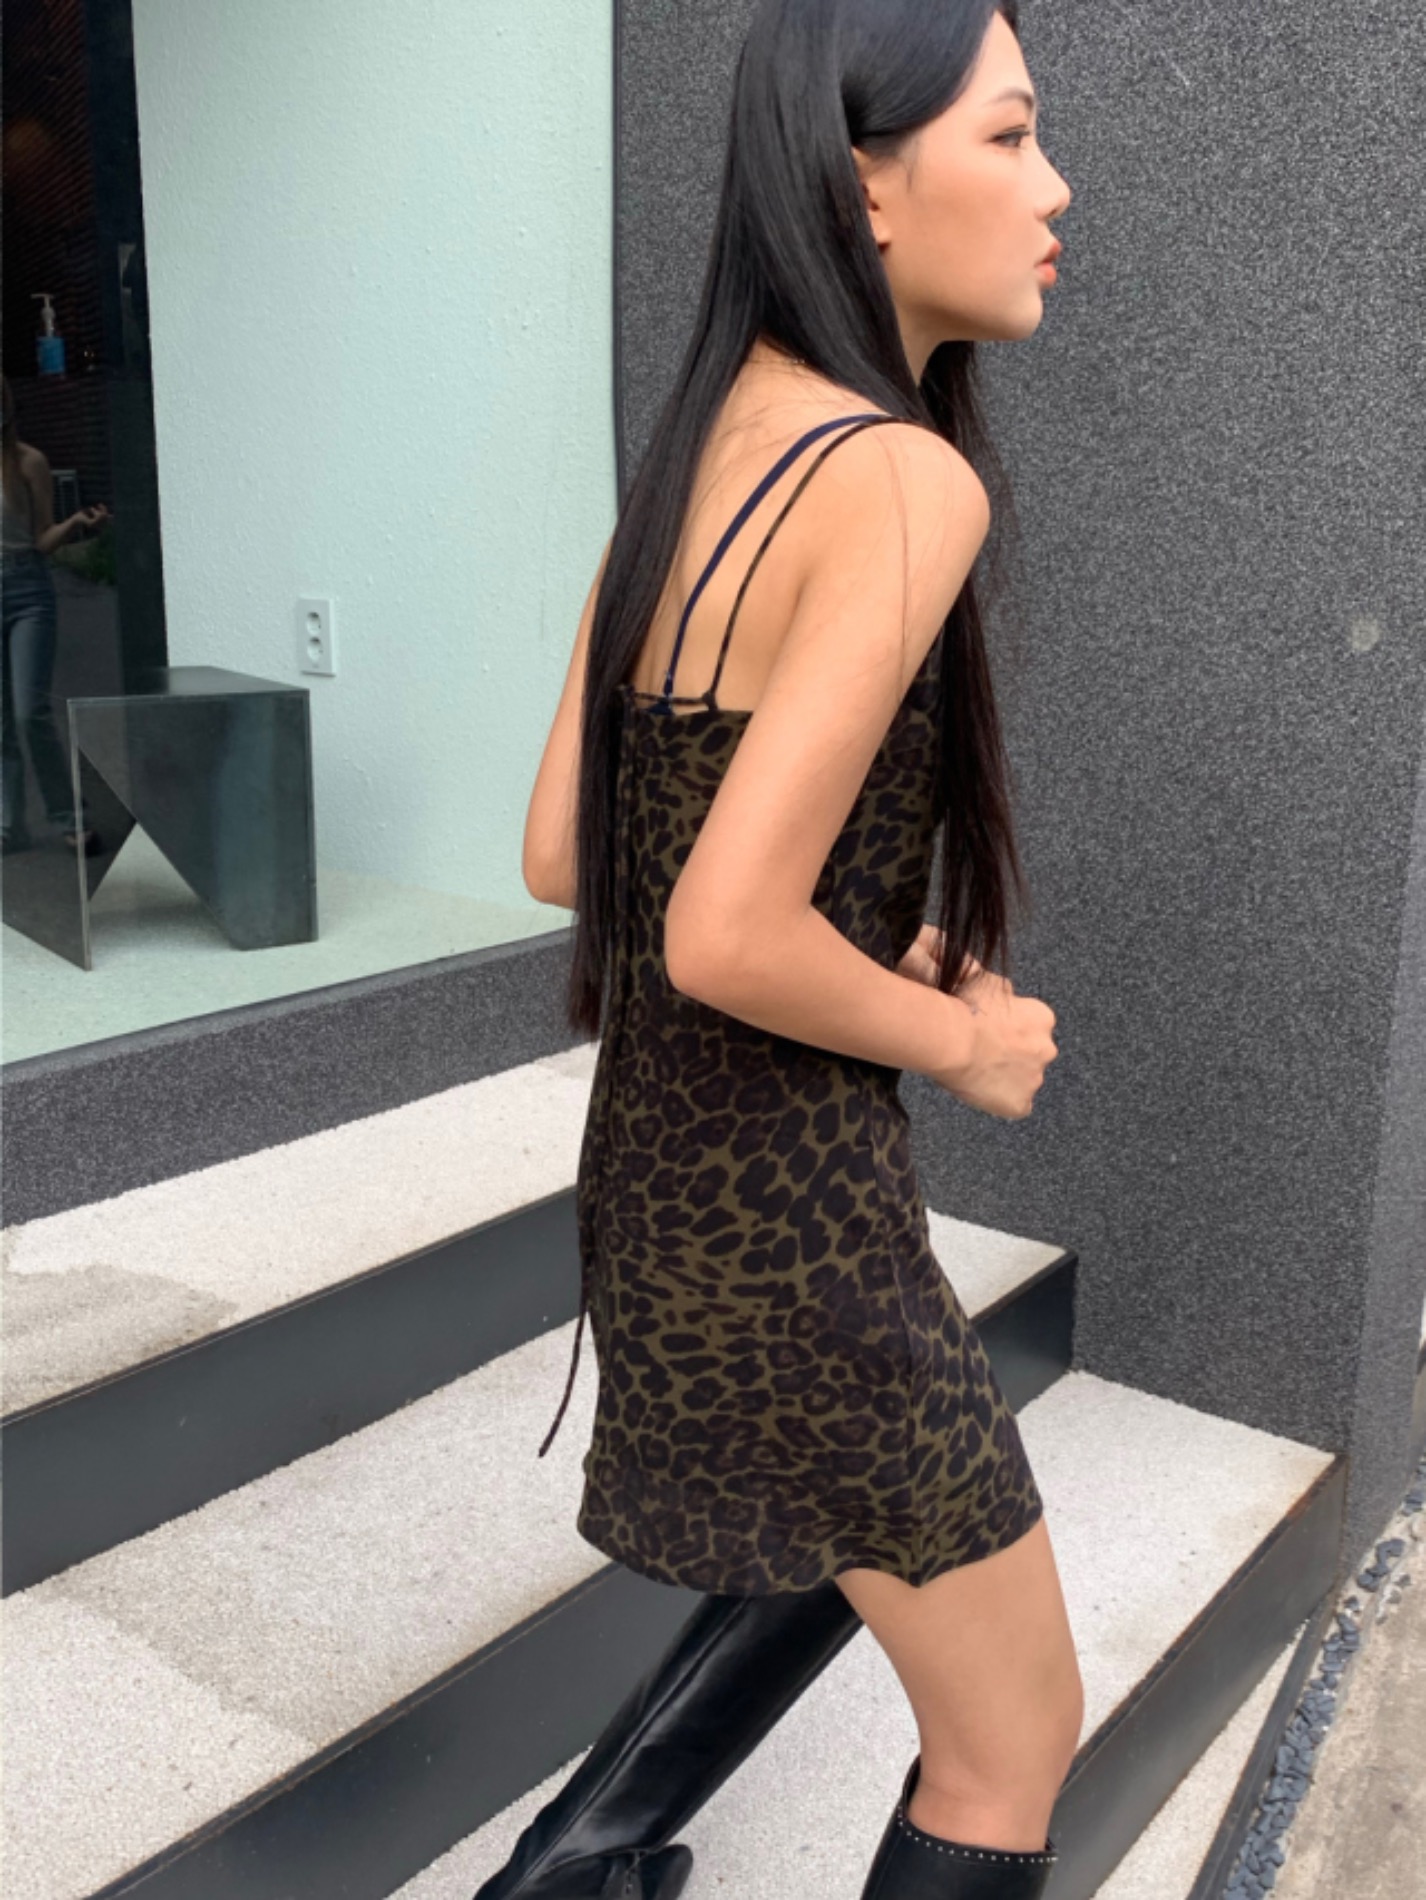 Leopard mini dress